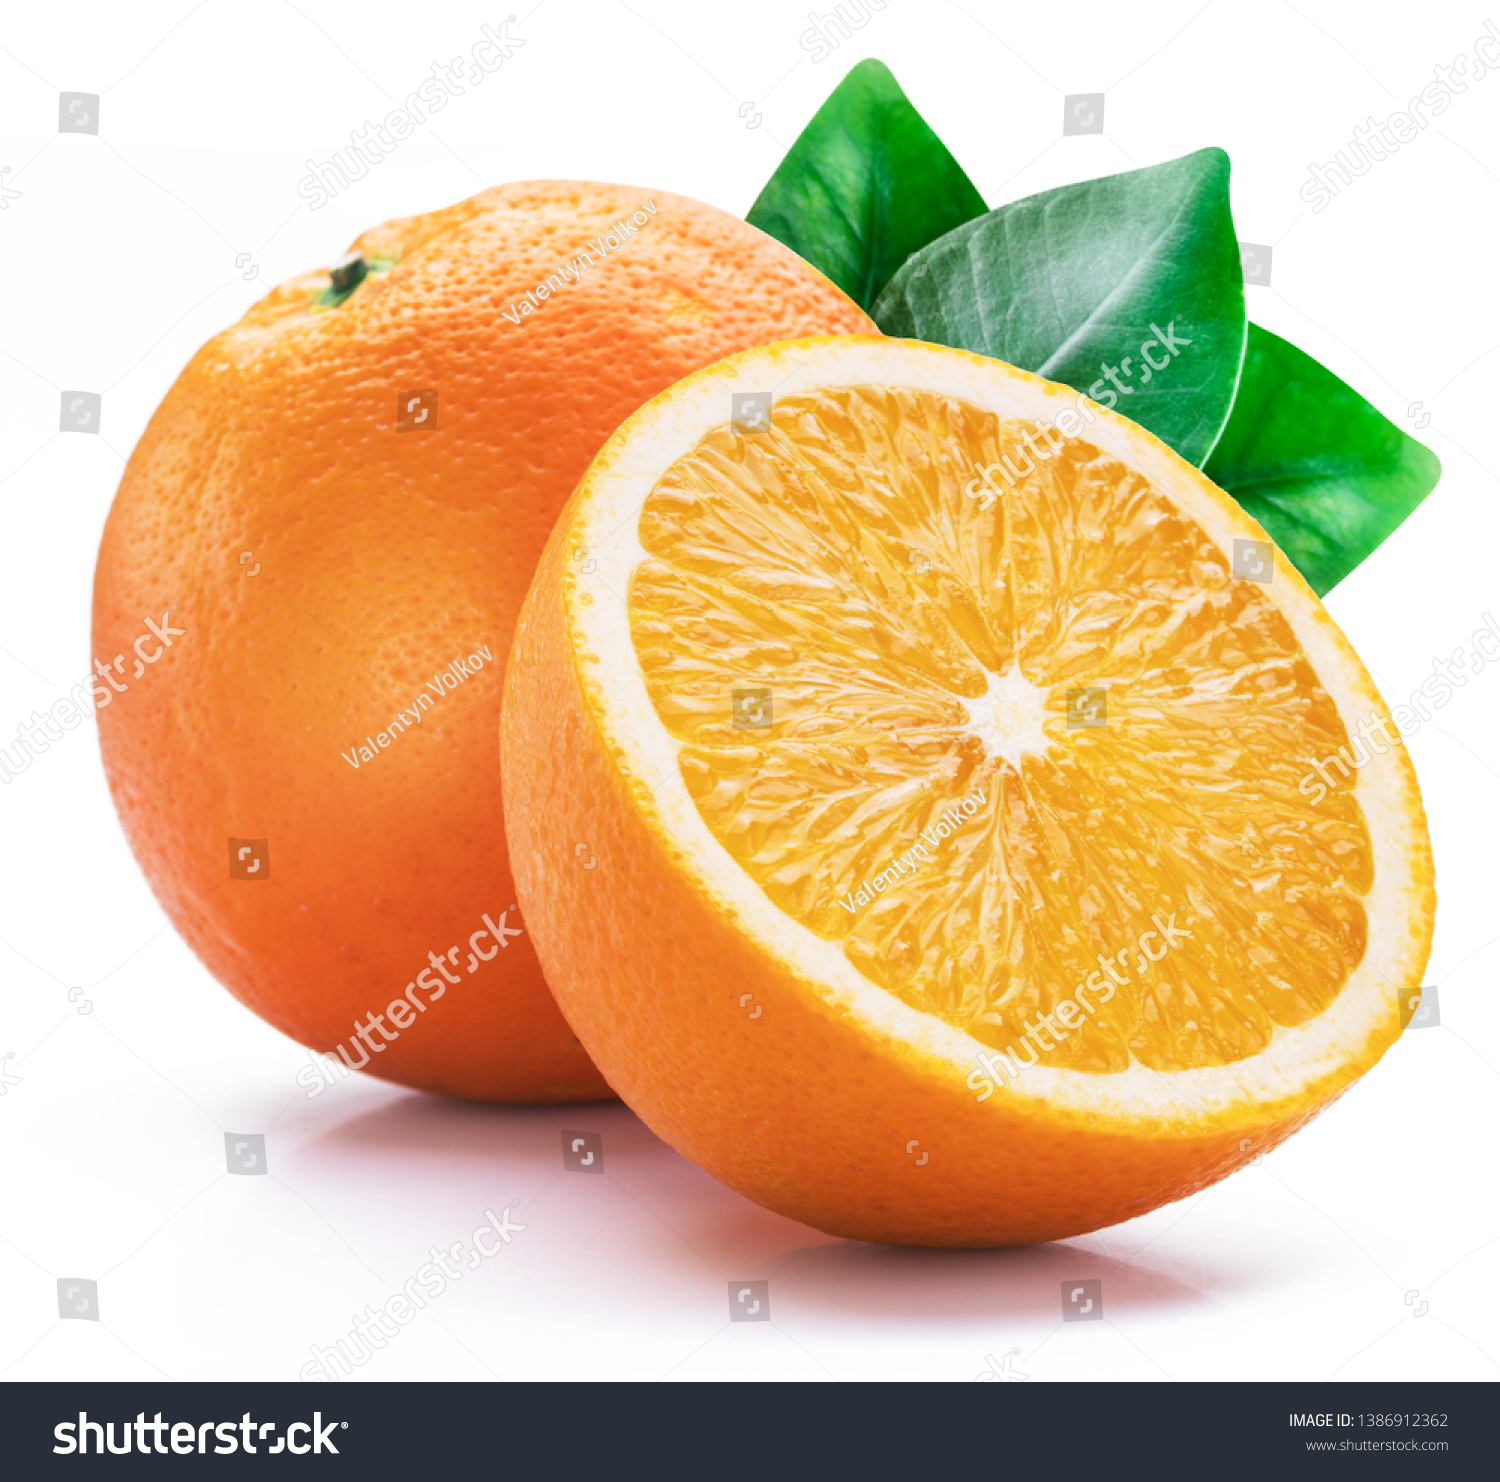 Orange fruit with orange slices and leaves isolated on white background. #1386912362